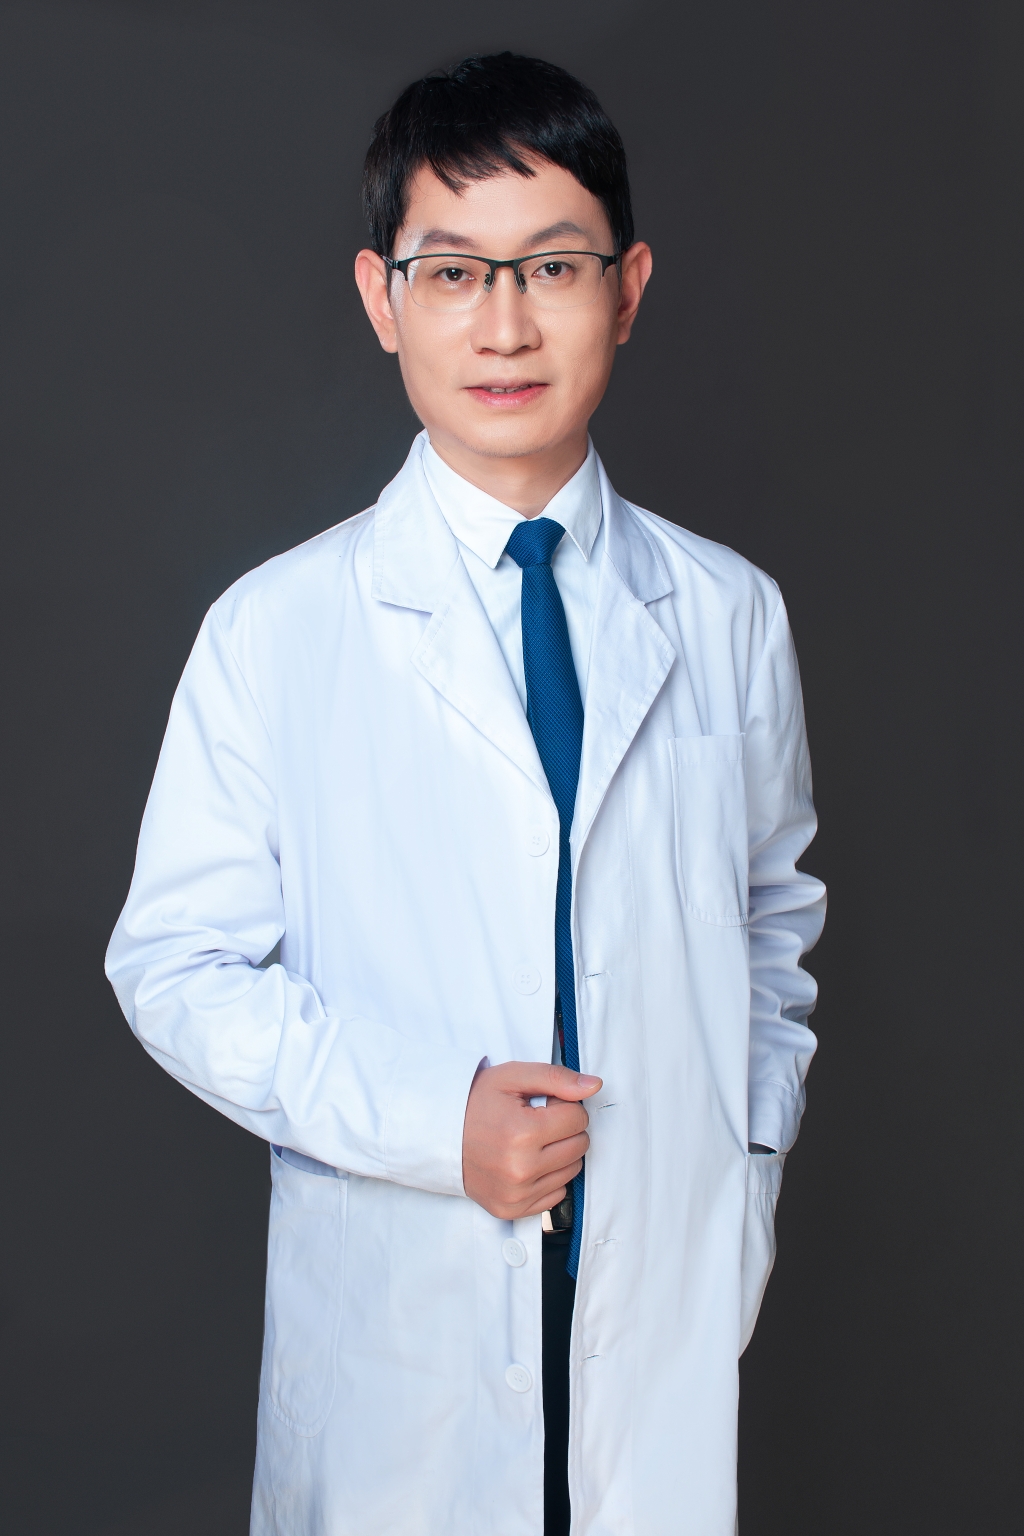 重庆医科大学附属第二医院皮肤科主任医师、副教授赵恒光。受访者供图